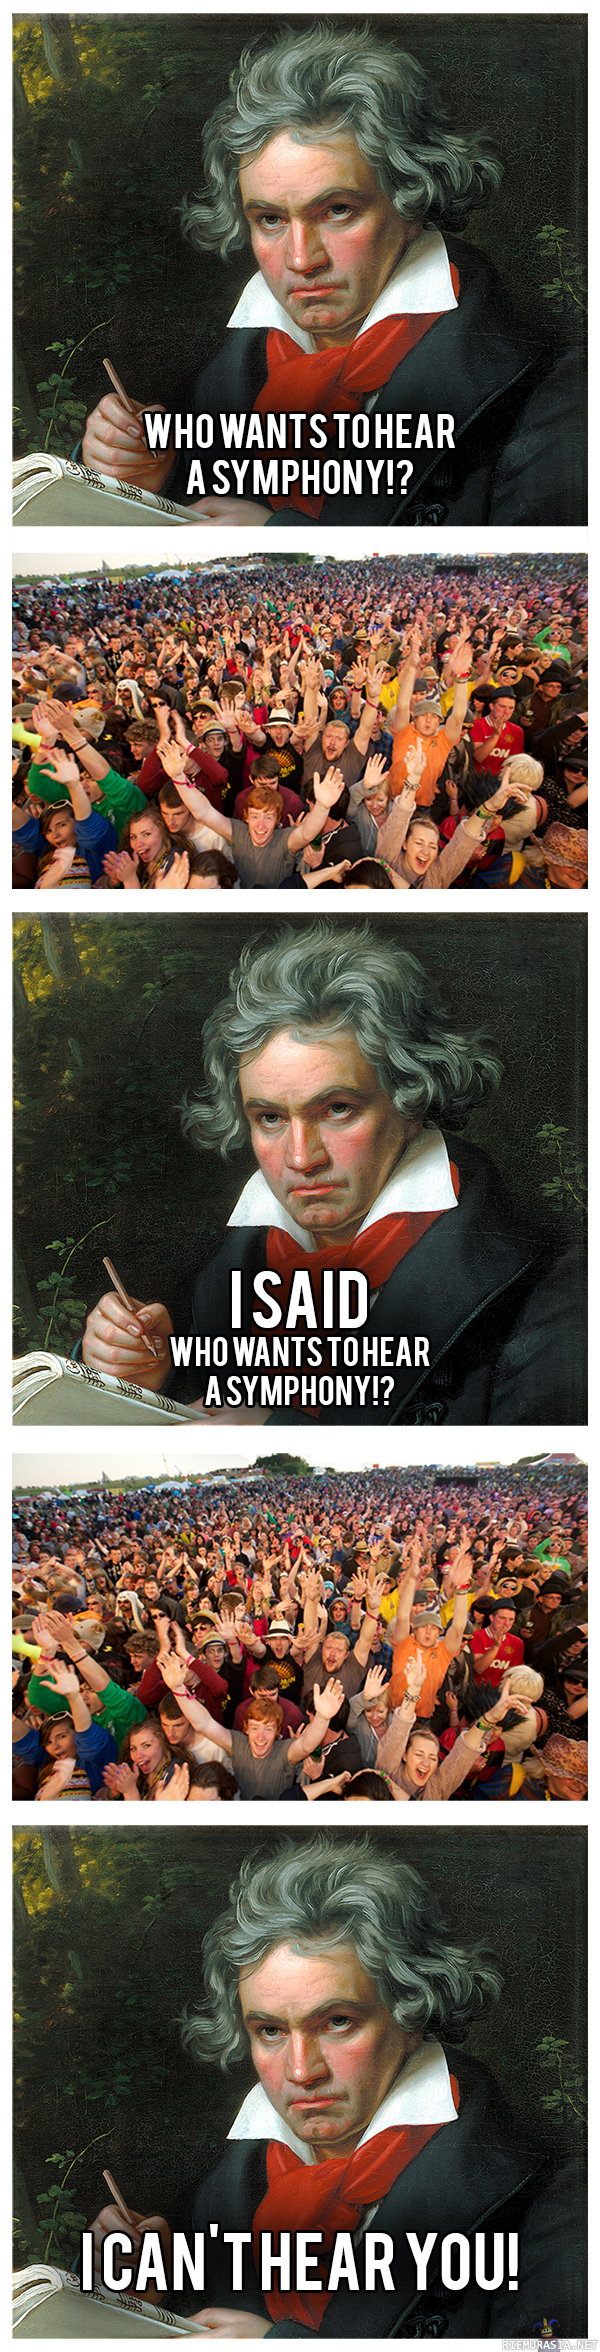 Kuka haluaa kuulla sinfonian? - Beethoven ei kuule yleisönsä huutoa